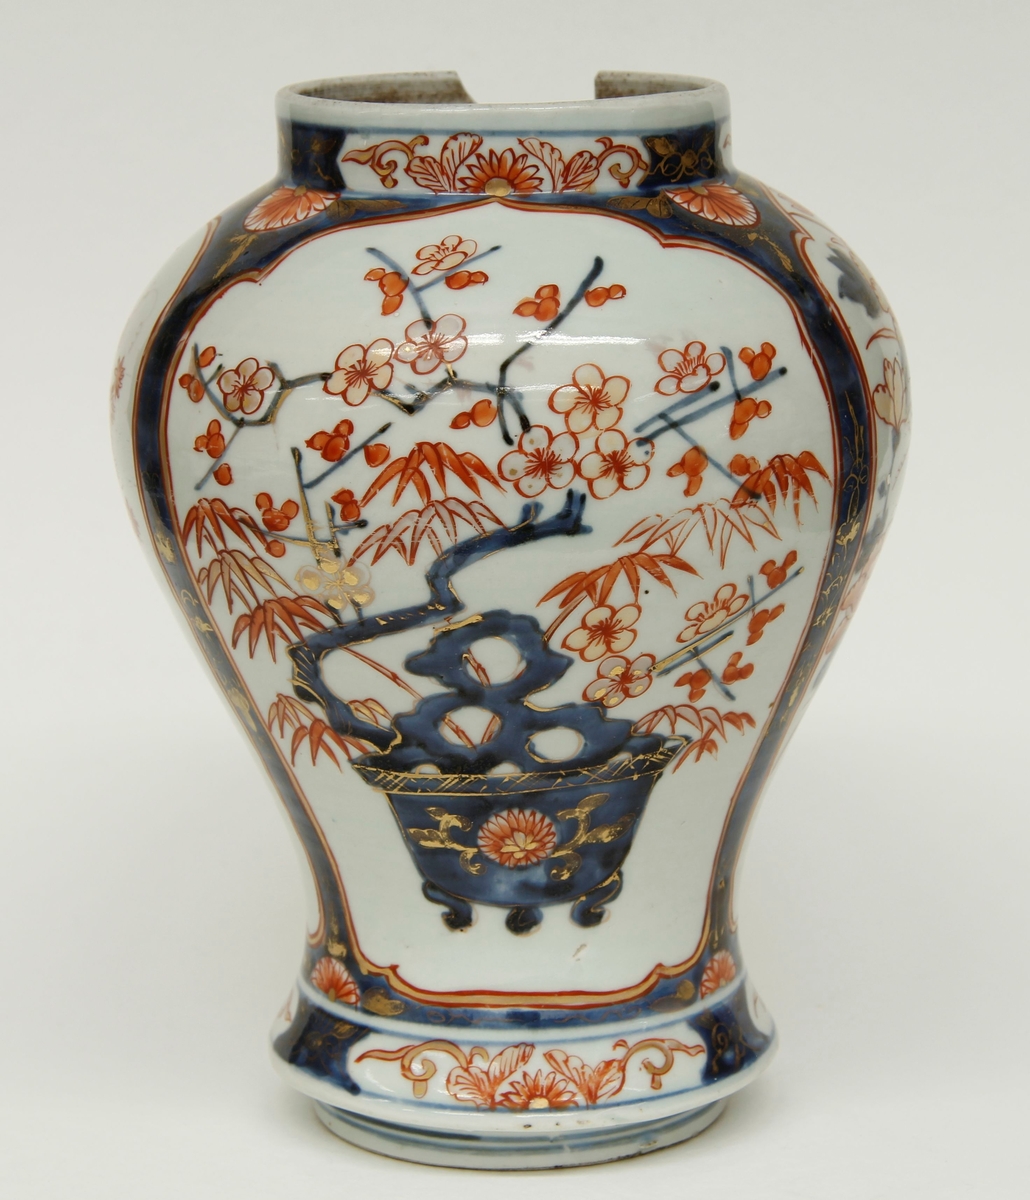 Balusterformet vase, kort, bred sylindrisk hals. Blomsterornamenter i blått og rødt med gullstaffering. Ingen produsentmerker.